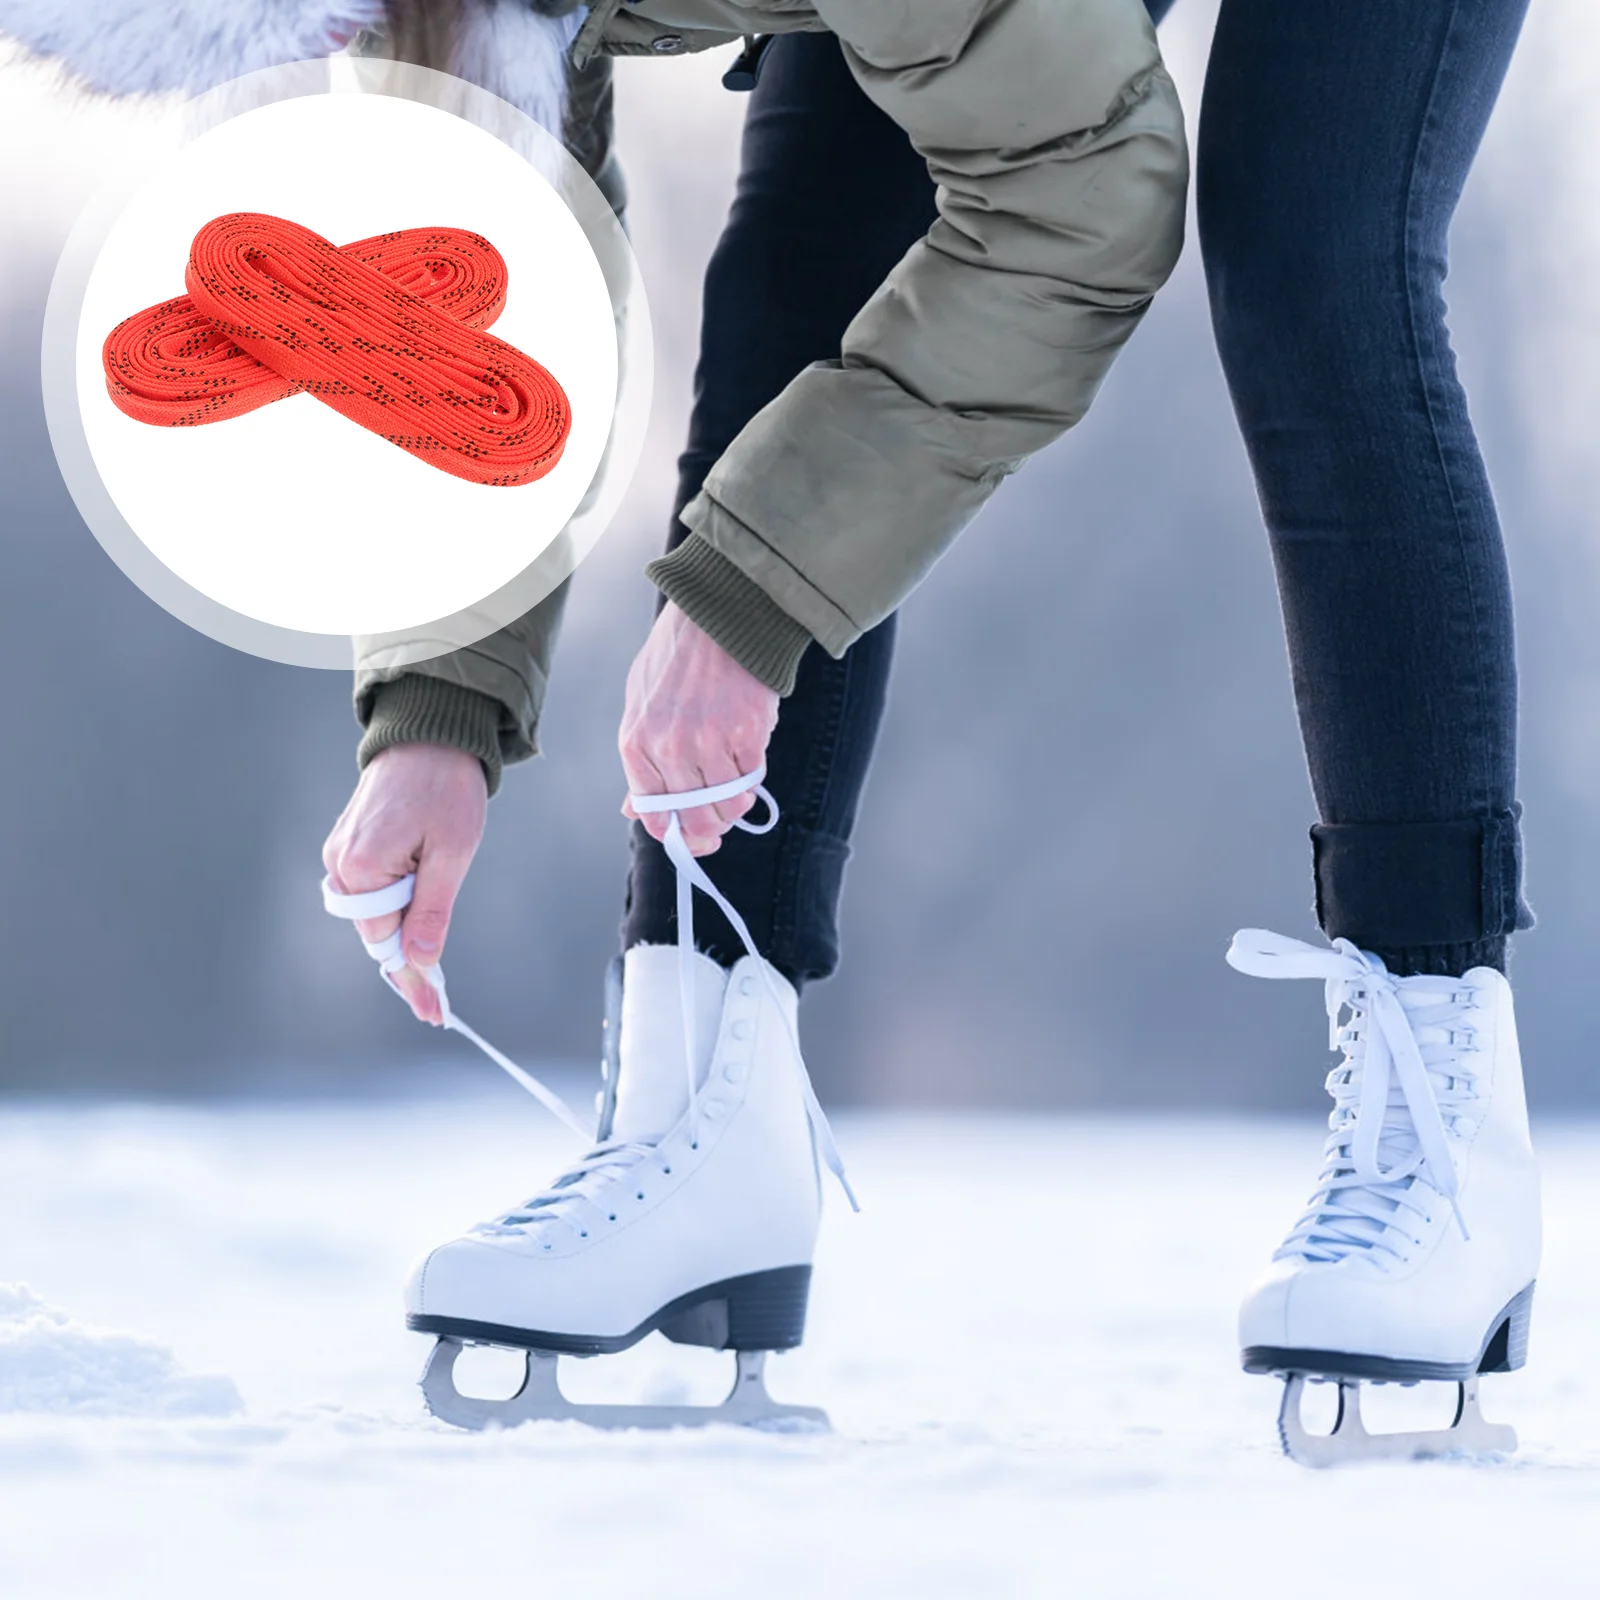 Профессиональные Шнурки Для Хоккейных Коньков С Шайбой Вощеные Шнурки Для обуви С Защитой от Замерзания И Переломов Шнурки для Спортивной Обуви Лыжный Хоккей